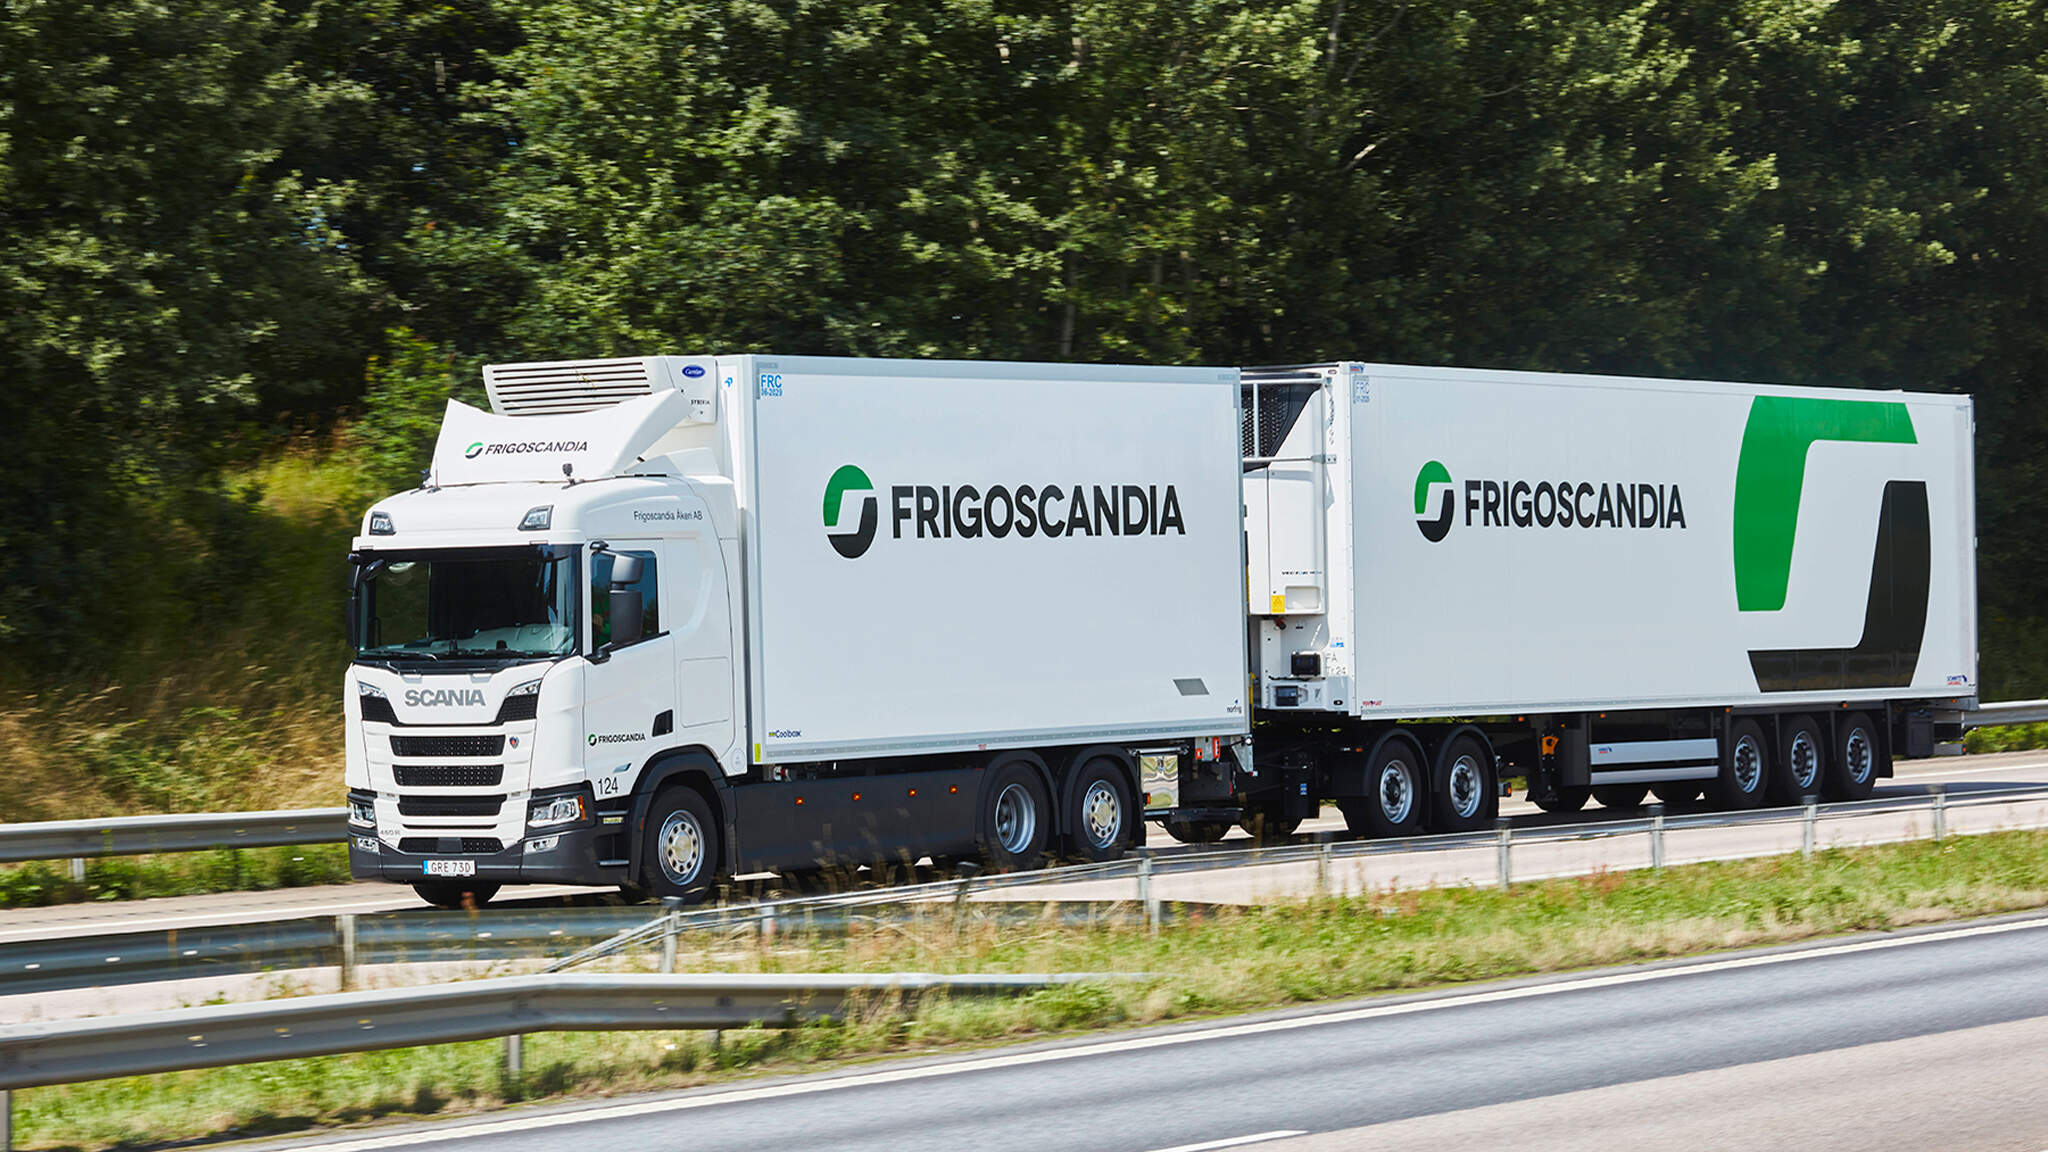 DACHER își îmbunătățește rețeaua logistică de bunuri alimentare în Europa printr-un parteneriat cu Frigoscandia.